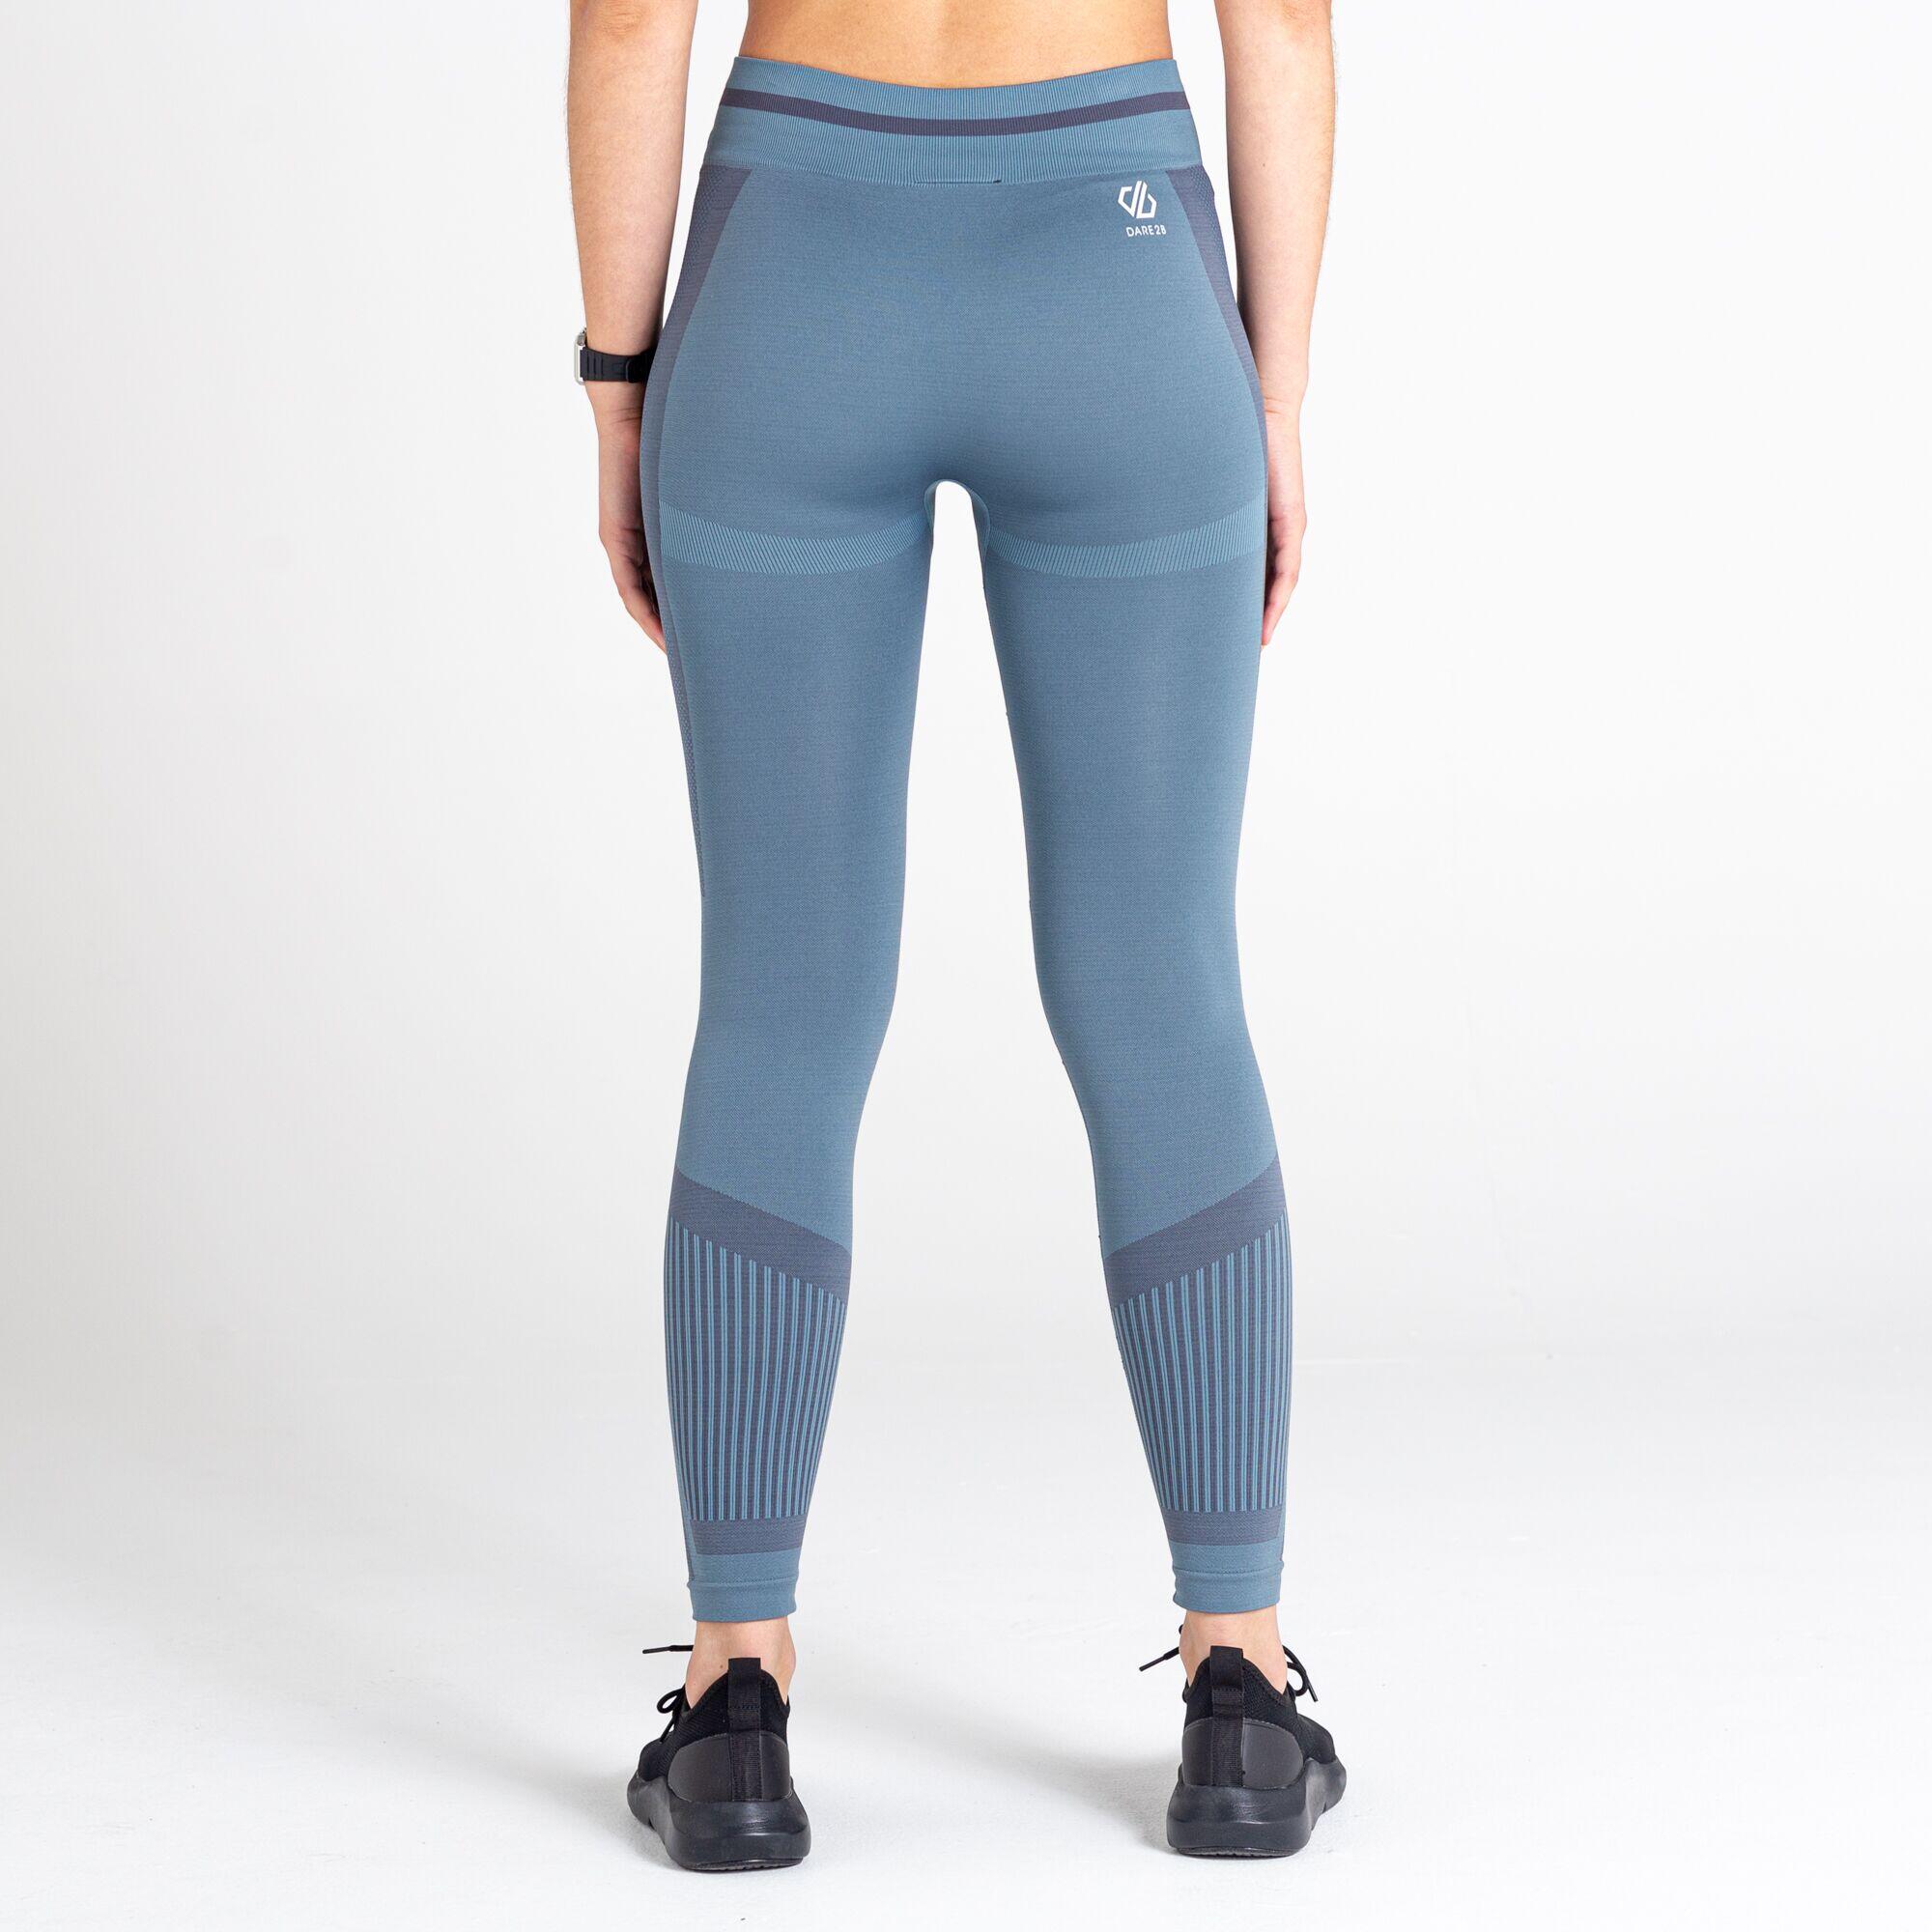 Dont Sweat It Women's Fitness Leggings - Blue Stone 4/5